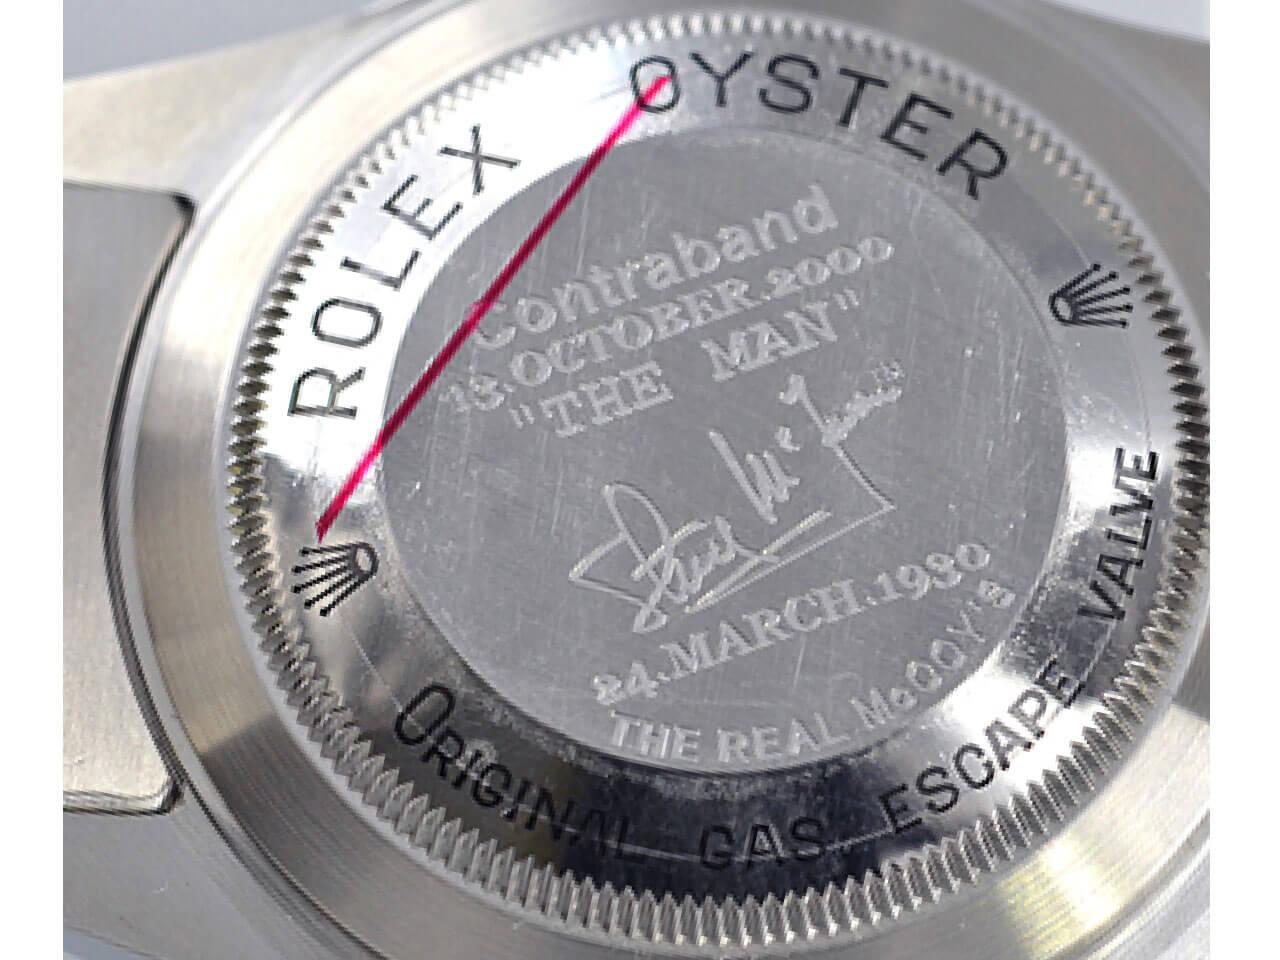 ロレックス（Rolex）のシードゥエラー（Sea-Dweller )16600 “STEVE McQUEEN”の裏蓋には刻印あり